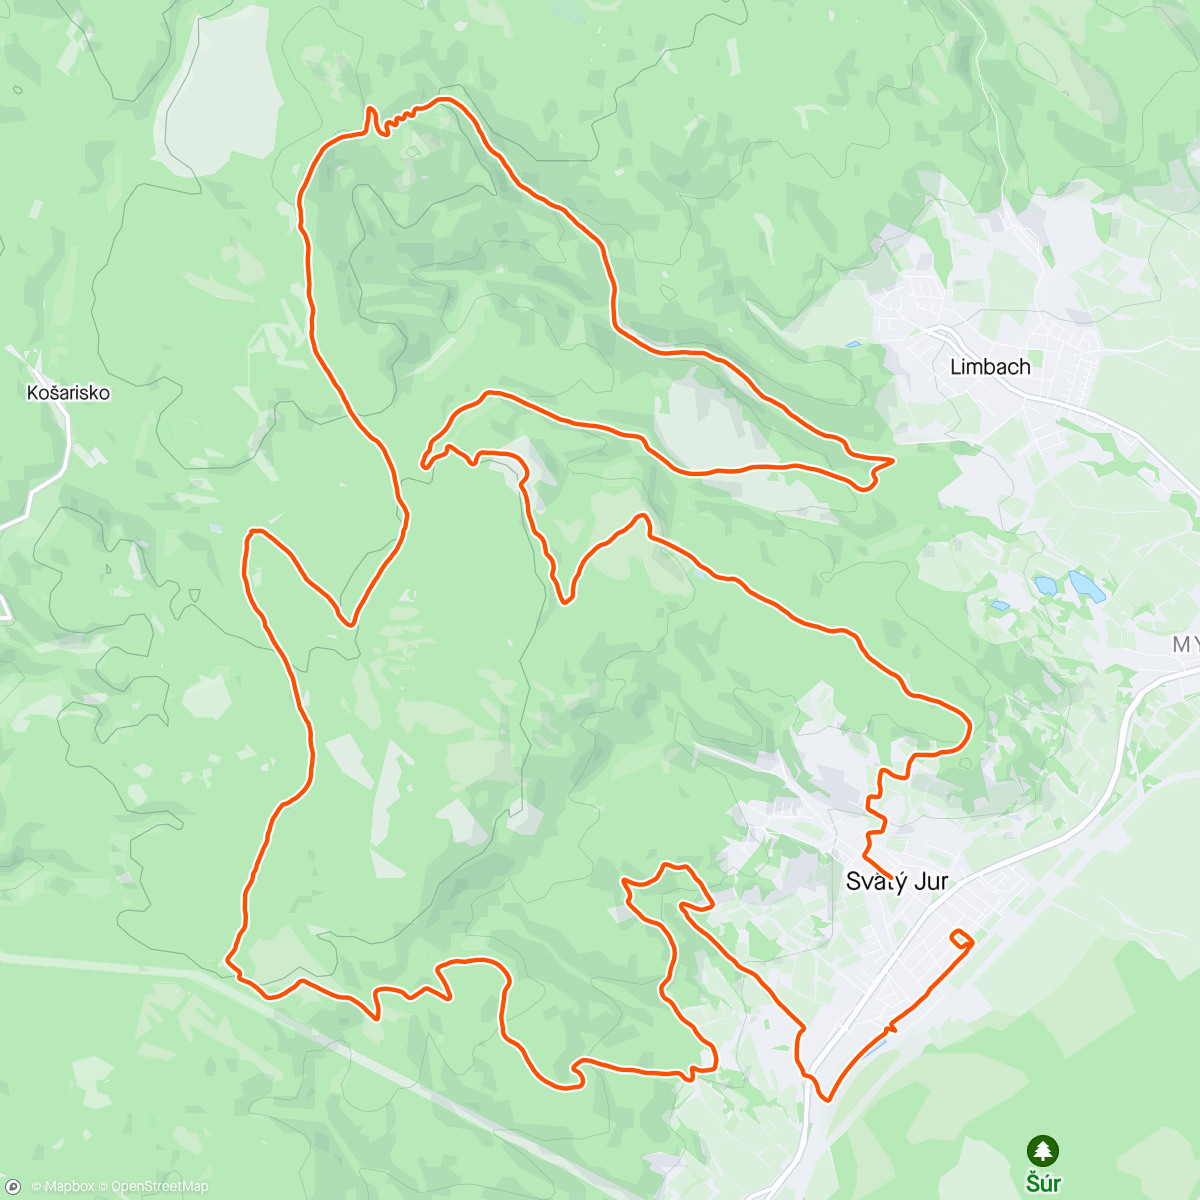 「svatojursky maraton zas v bahne」活動的地圖